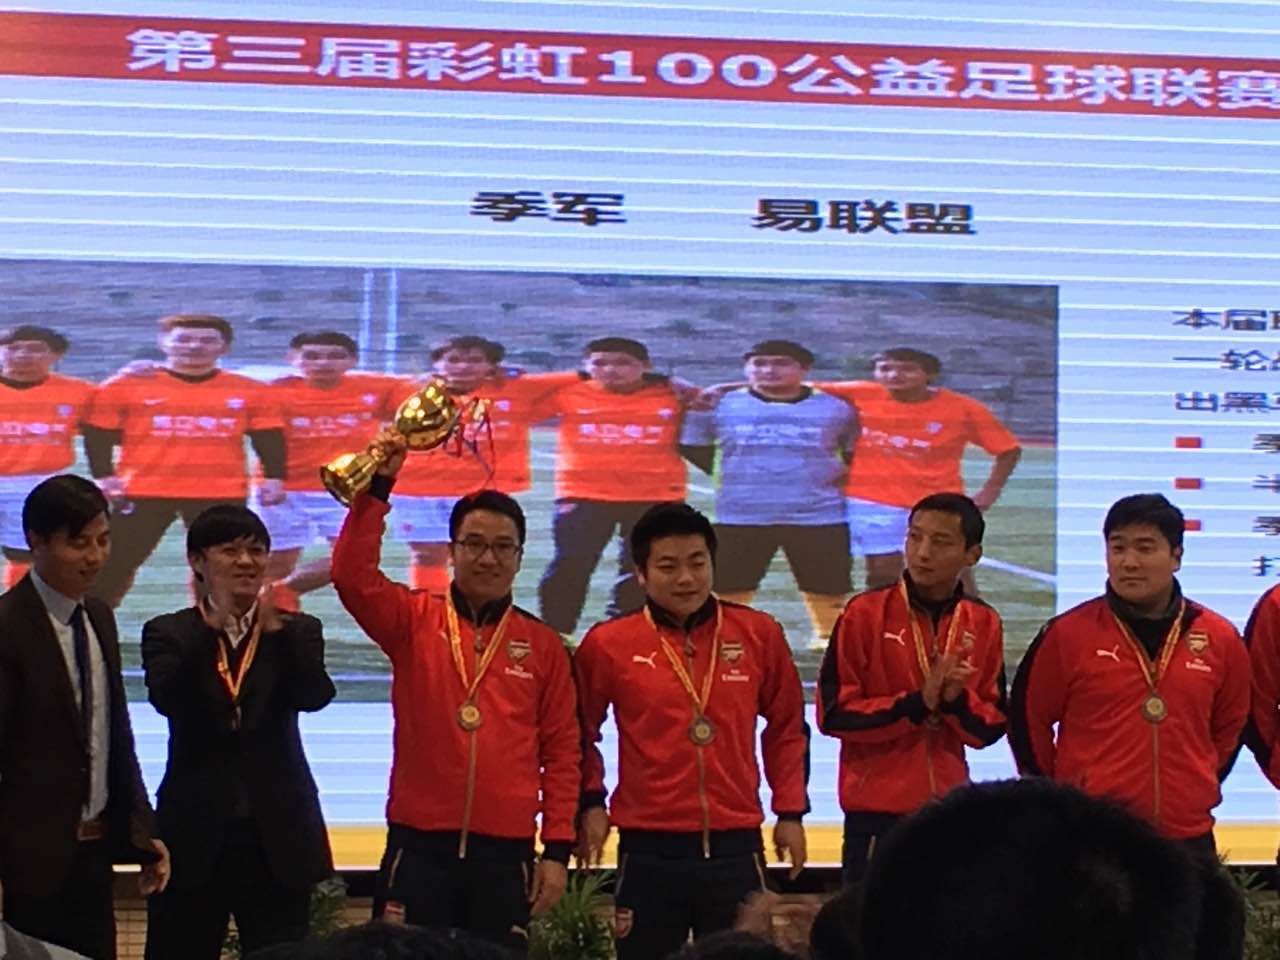 我公司球队“易联盟”在第三届彩虹100公益足球联赛中荣获季军